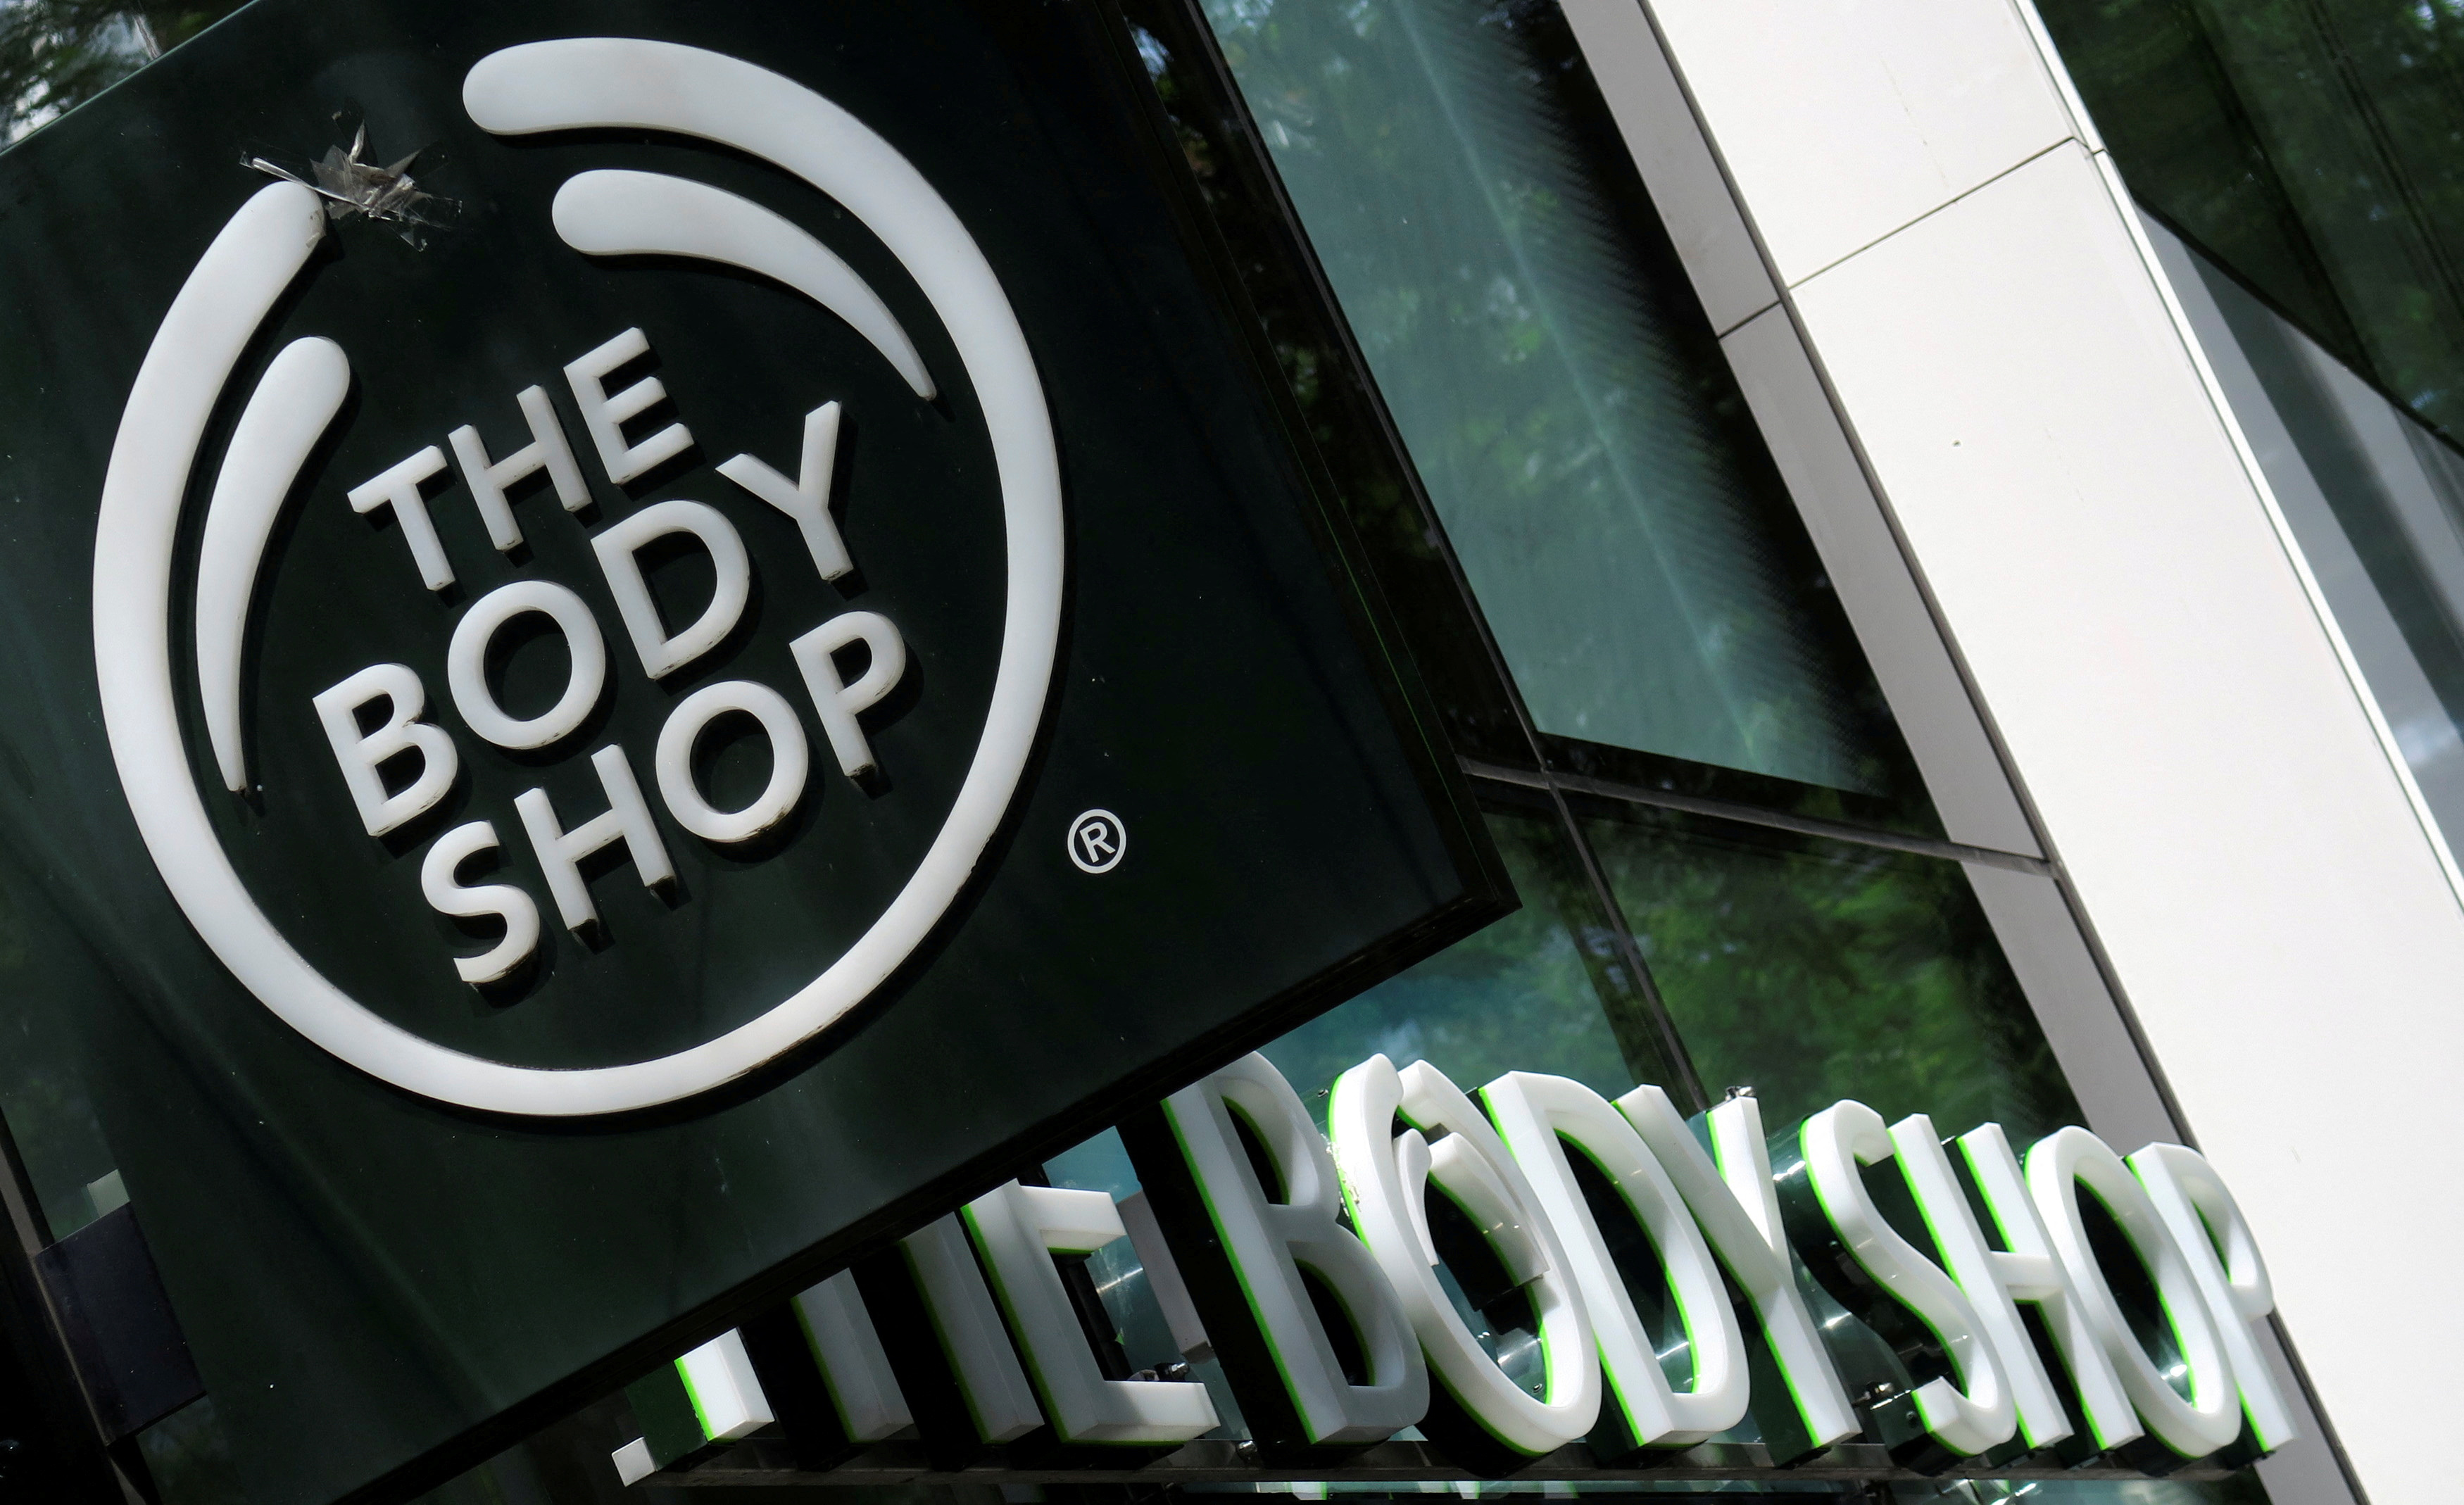 Der Eigentümer von The Body Shop sagte, er prüfe „strategische Alternativen“ für den Einzelhändler